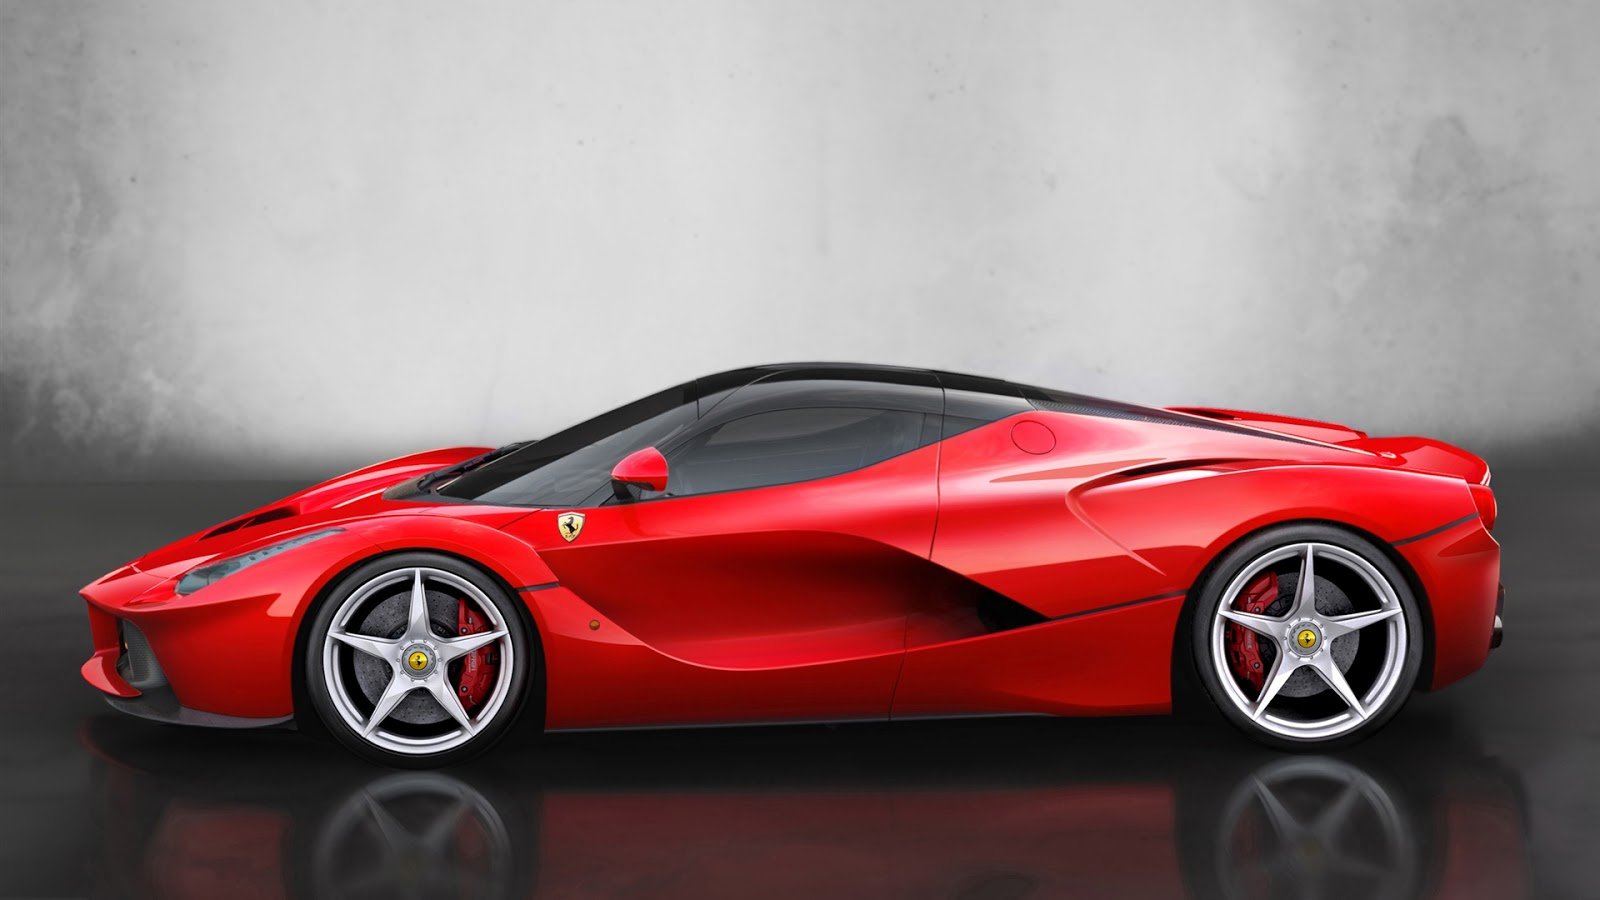 Ferrari Red Supercar Full HD Desktop Wallpapers 1080p